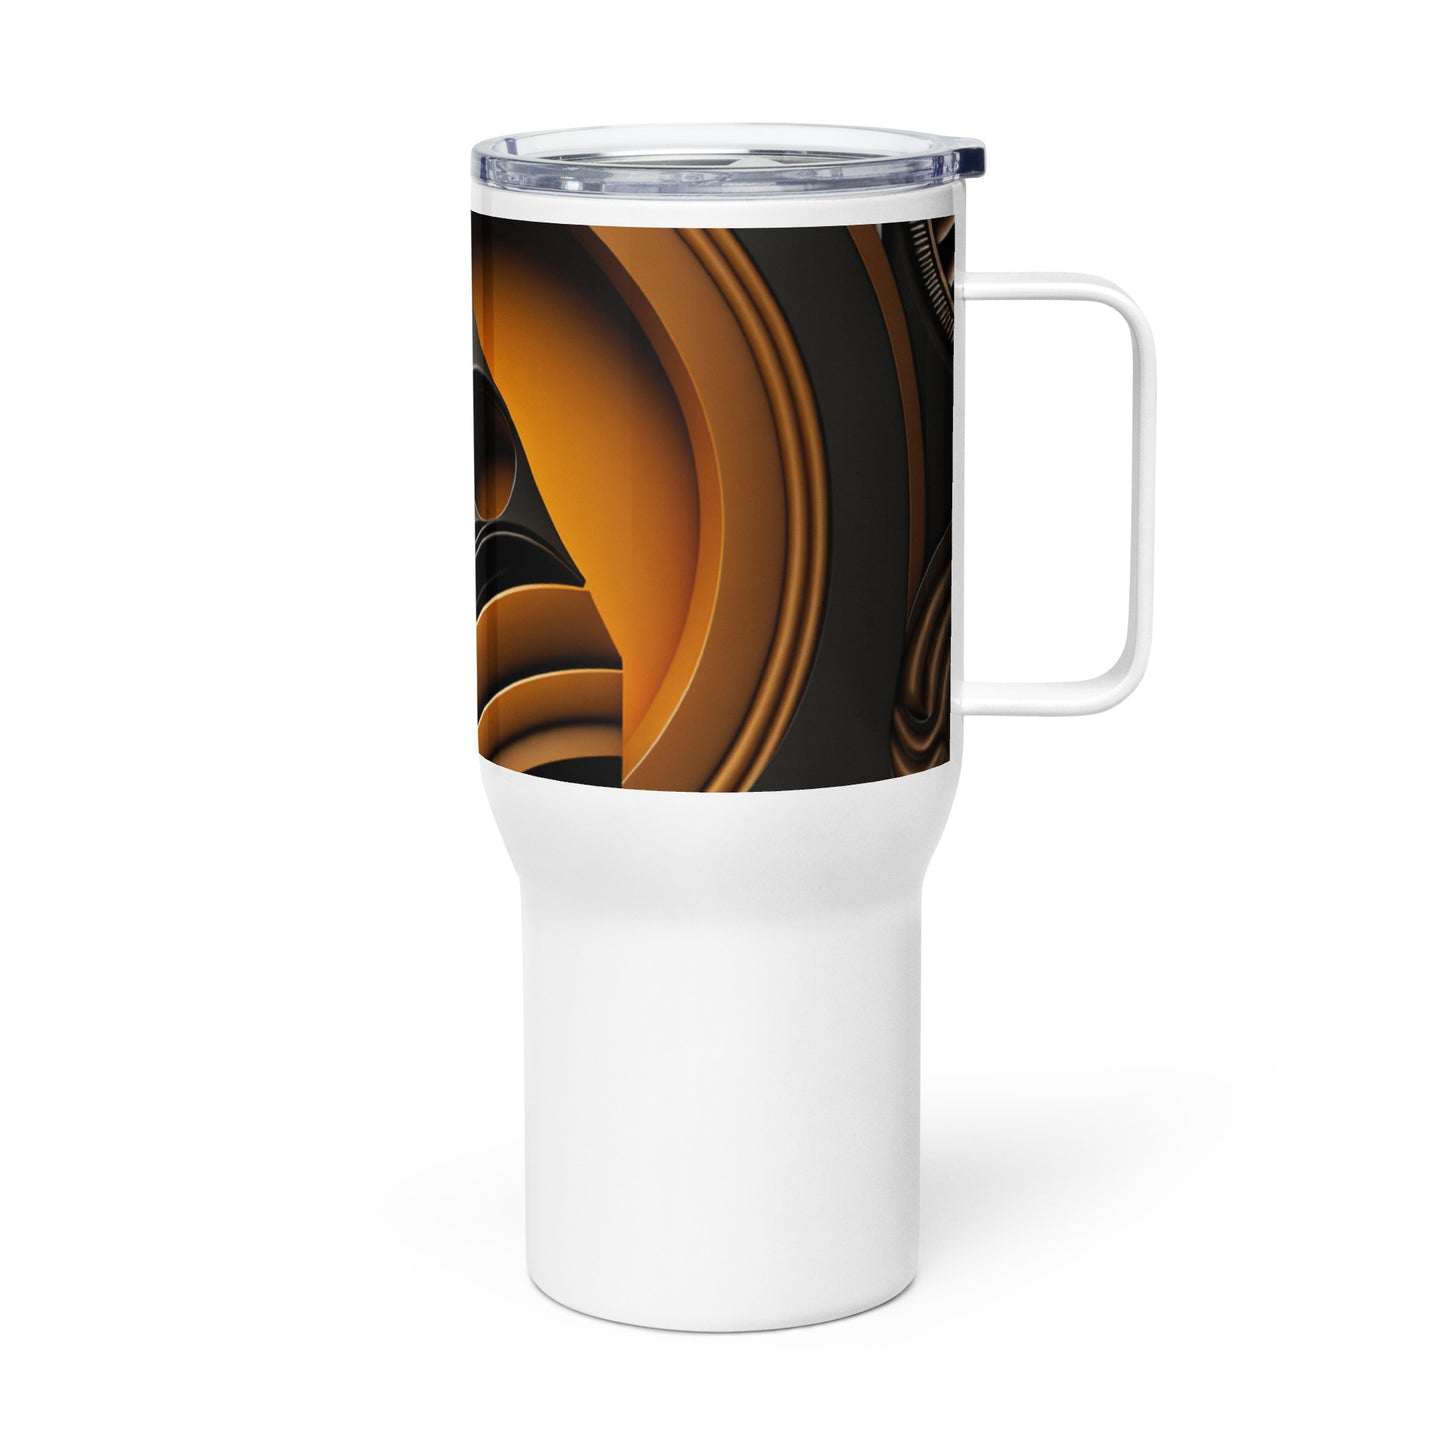 'ANGLED DESIGN;" Travel mug with a handle